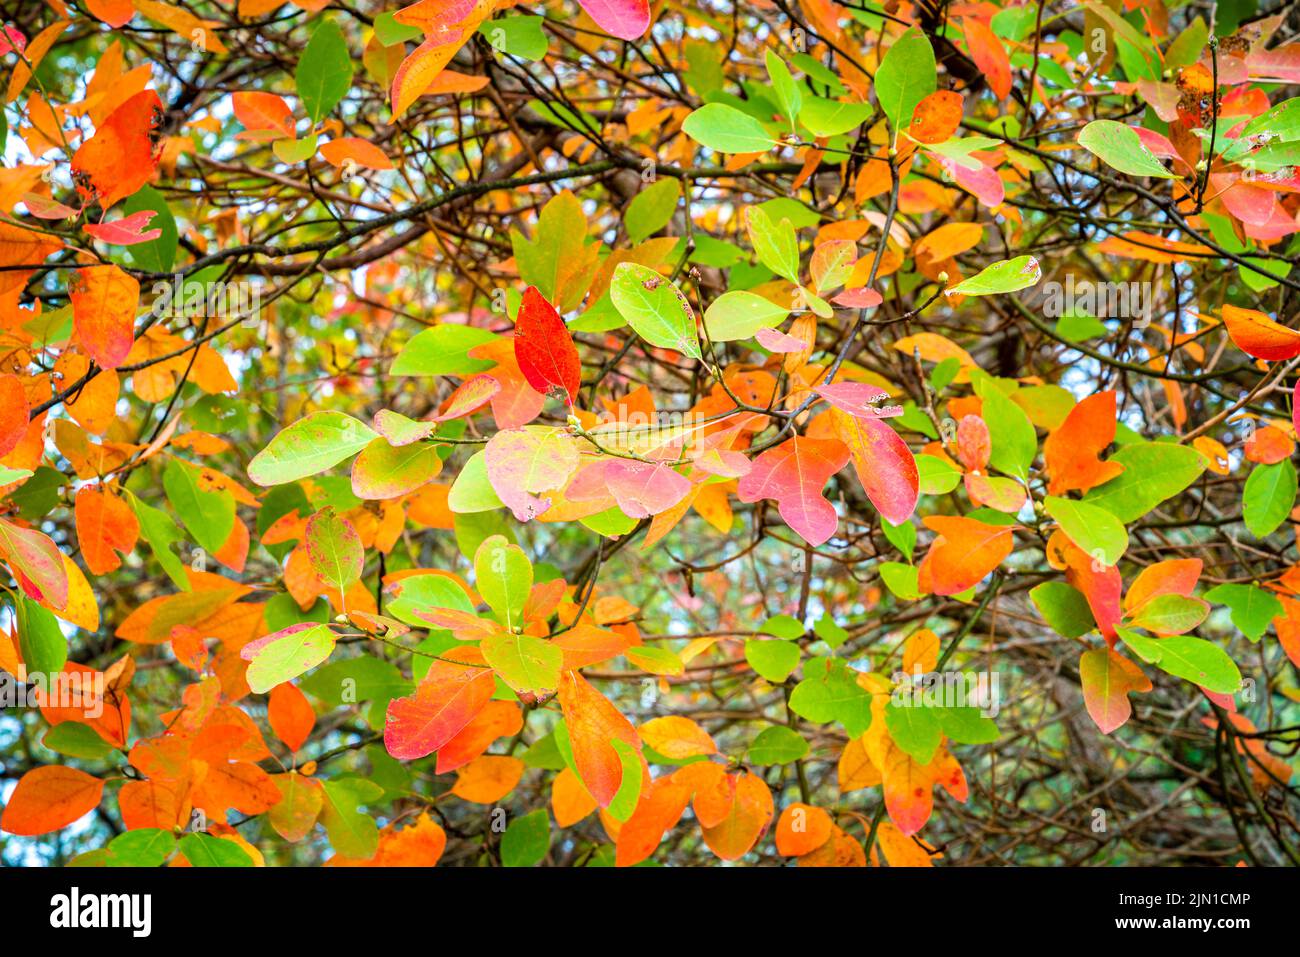 Immagine ravvicinata di rami con foglie autunnali verdi e rosse Foto Stock